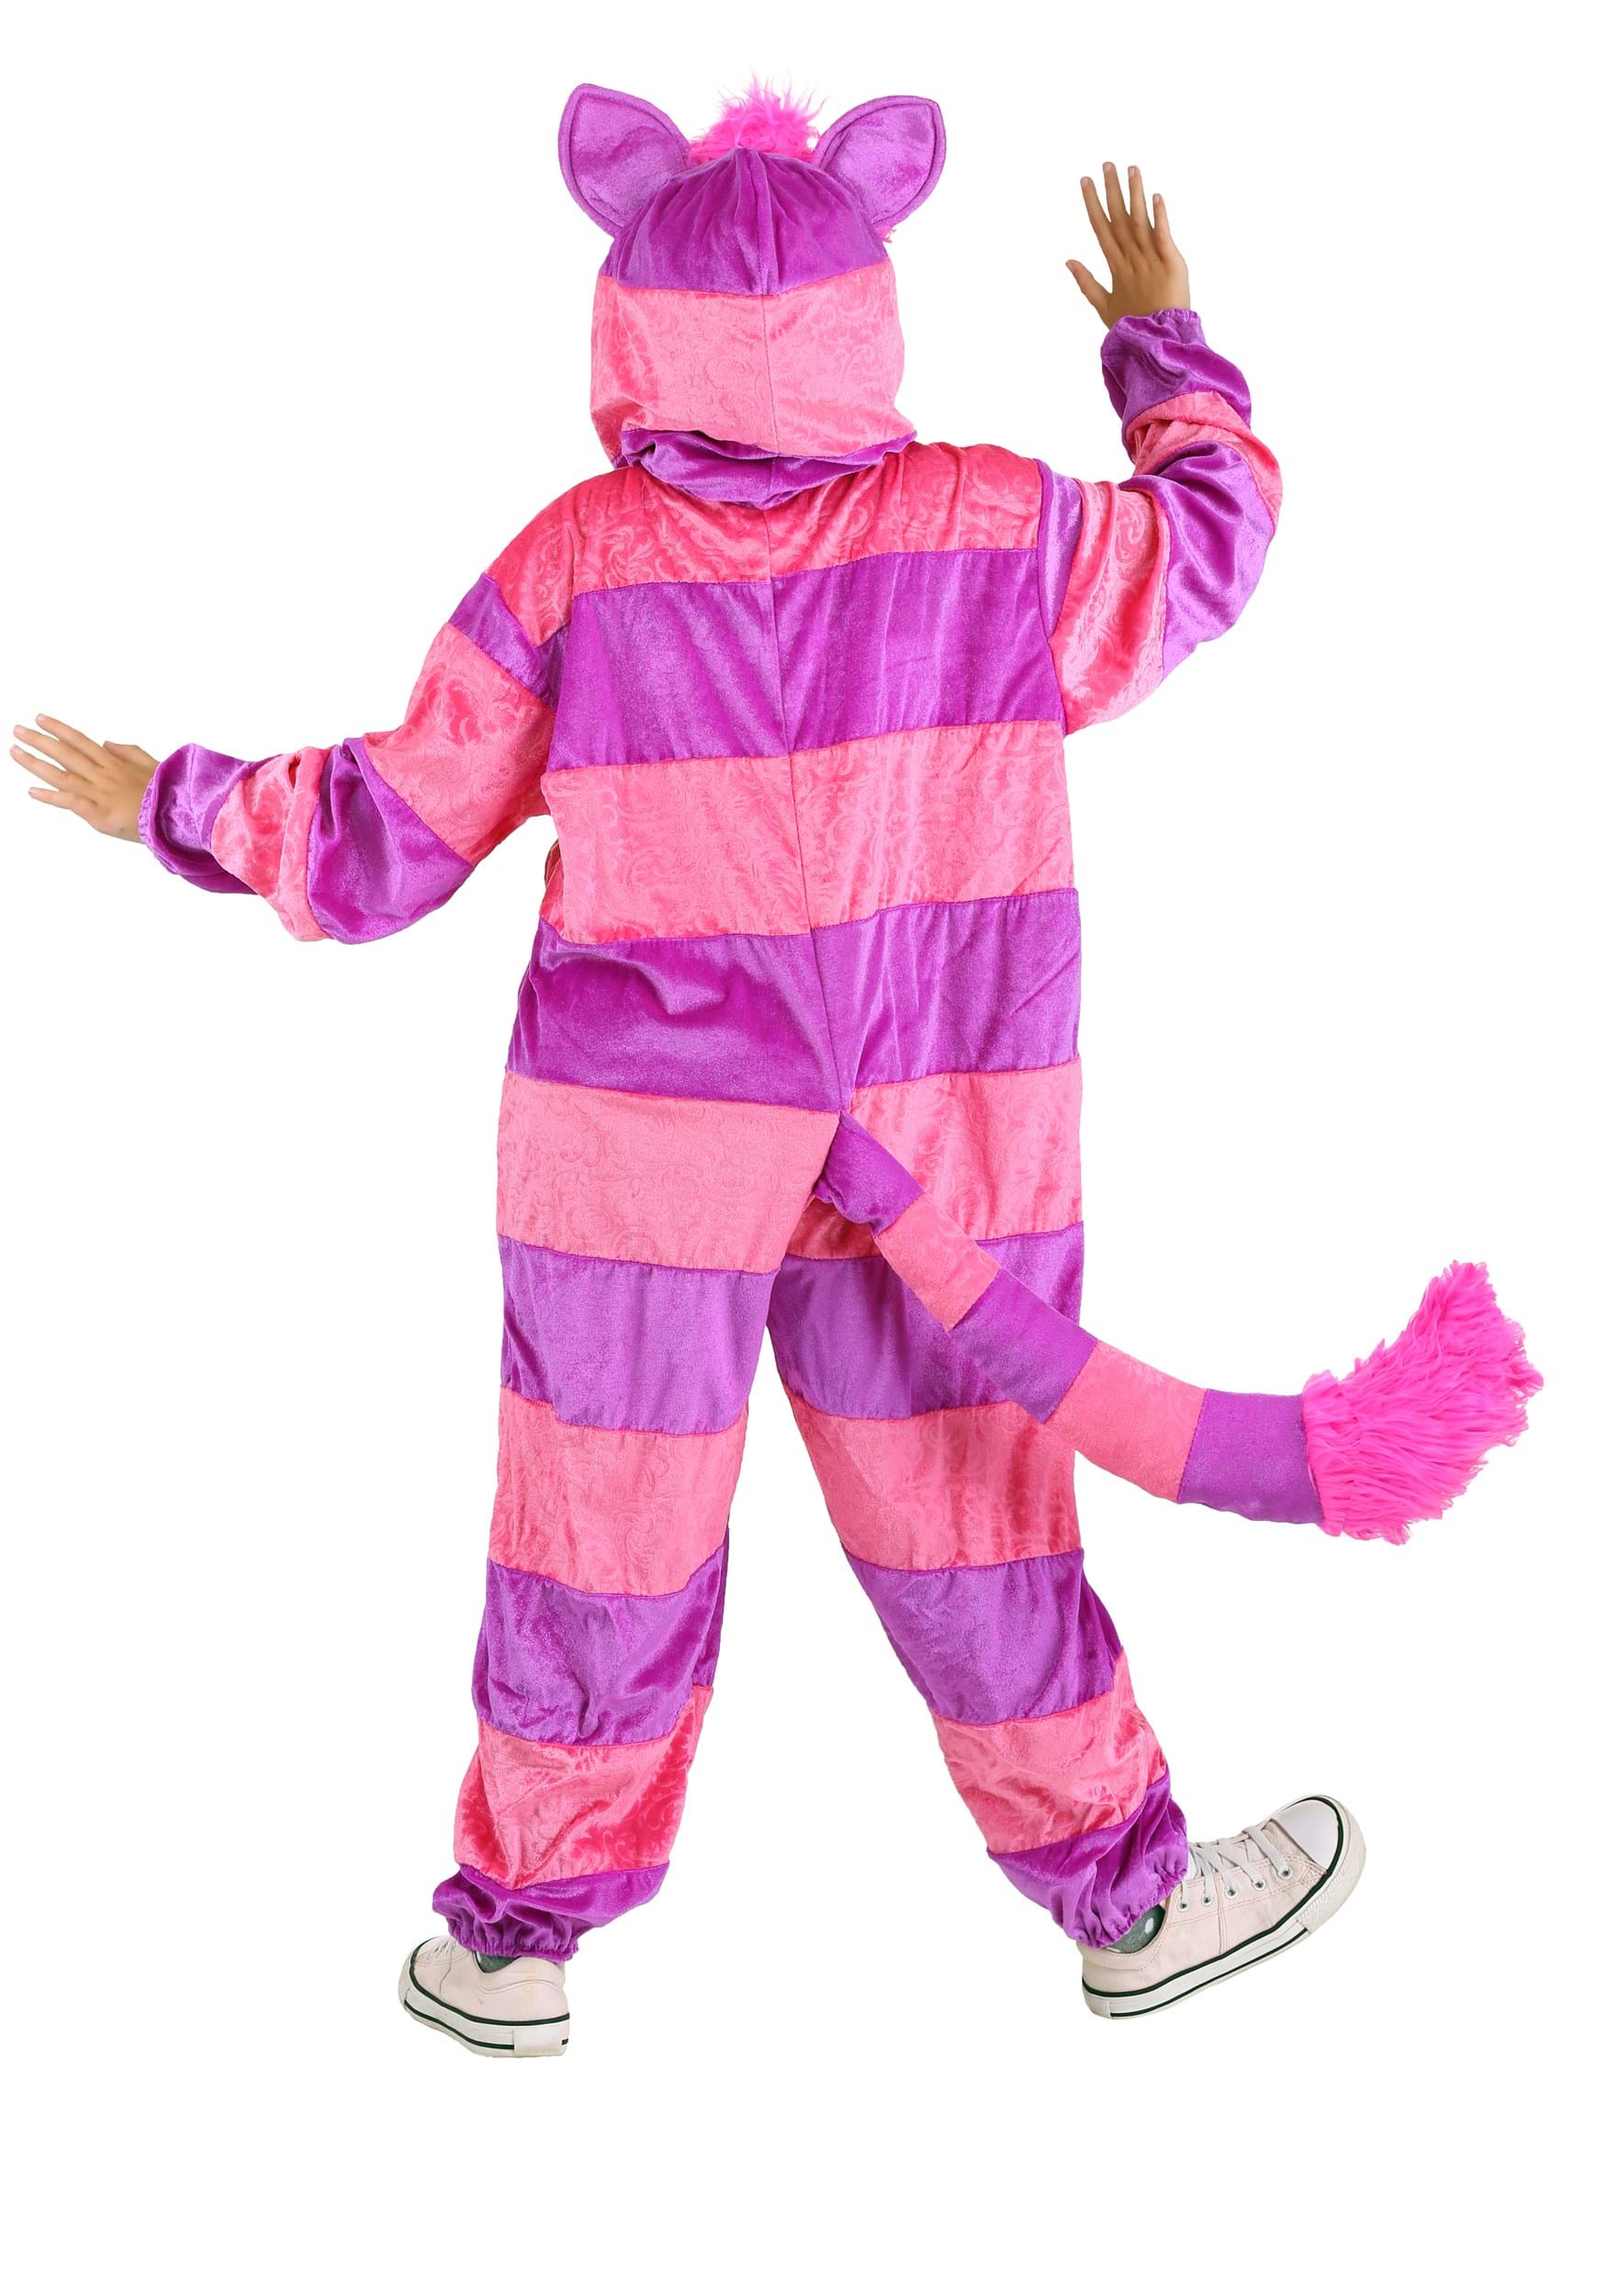 Cheshire Cat Jumpsuit Child Costume